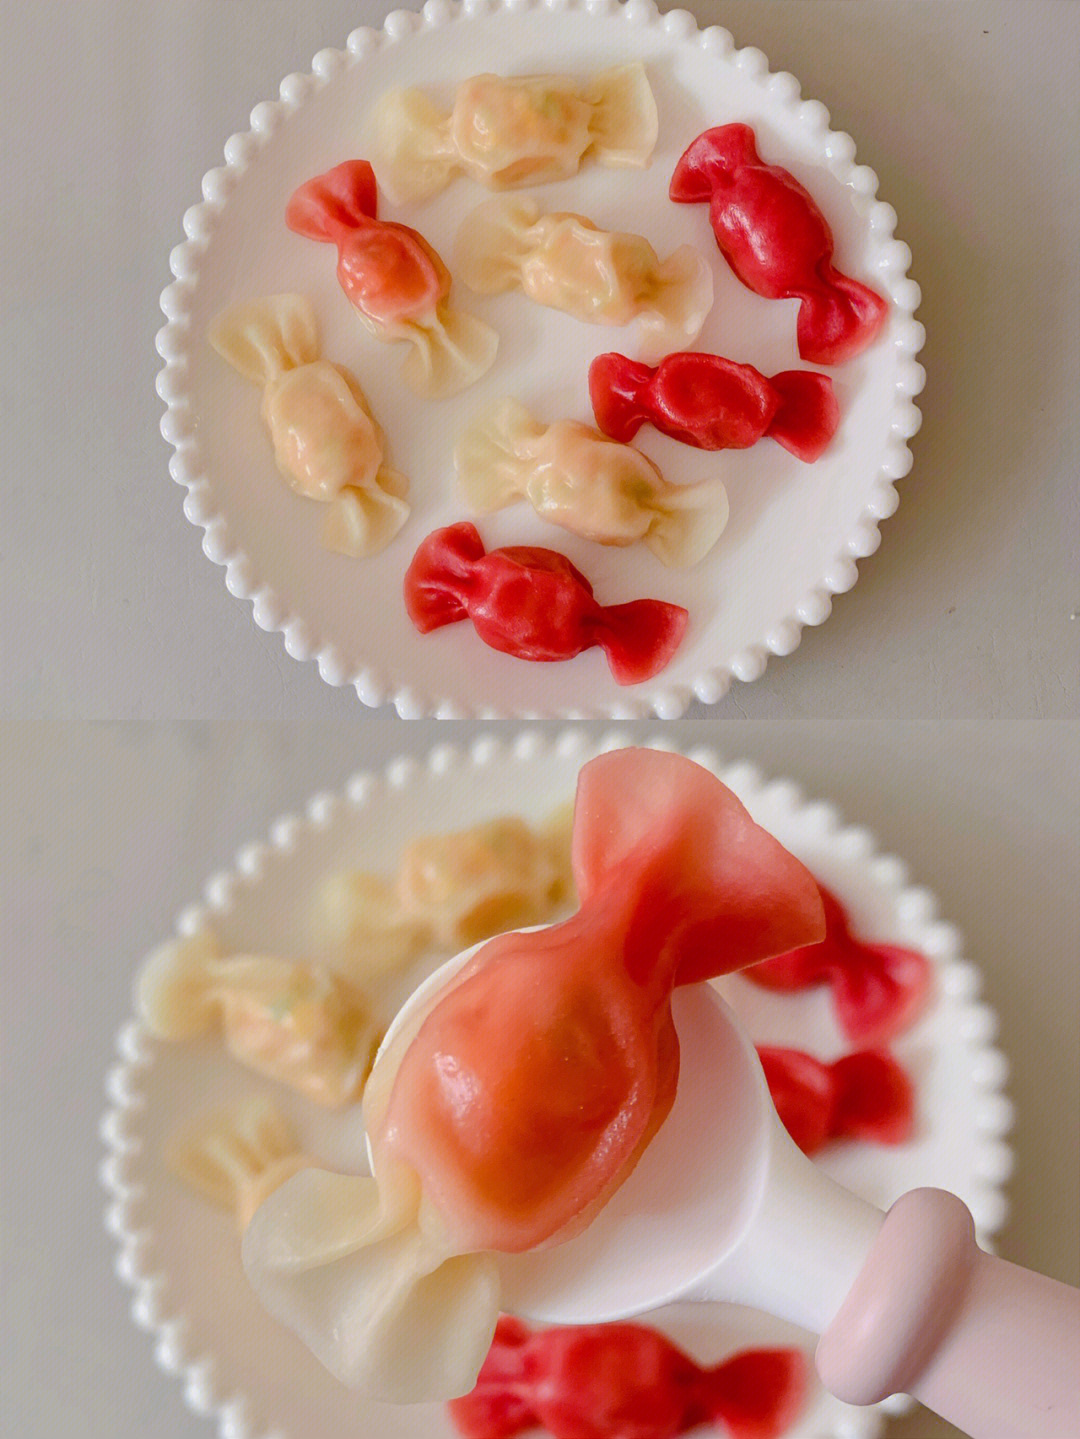 10m辅食宝宝版糖果小饺子鲜香可口